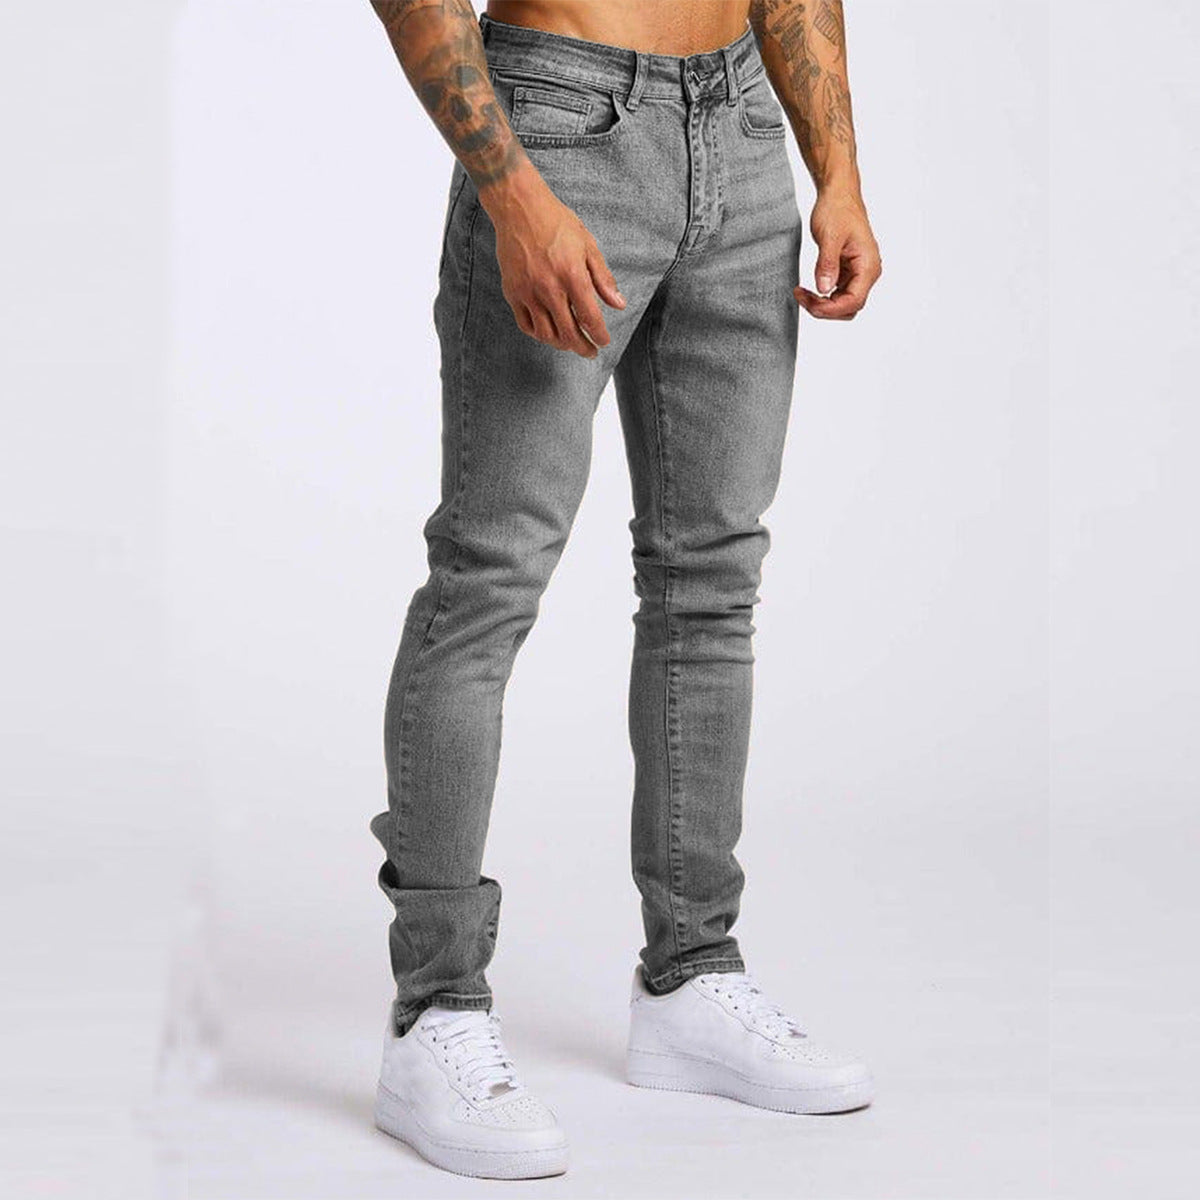 Mr. Worldwide Slim High Waist Denim Jeans